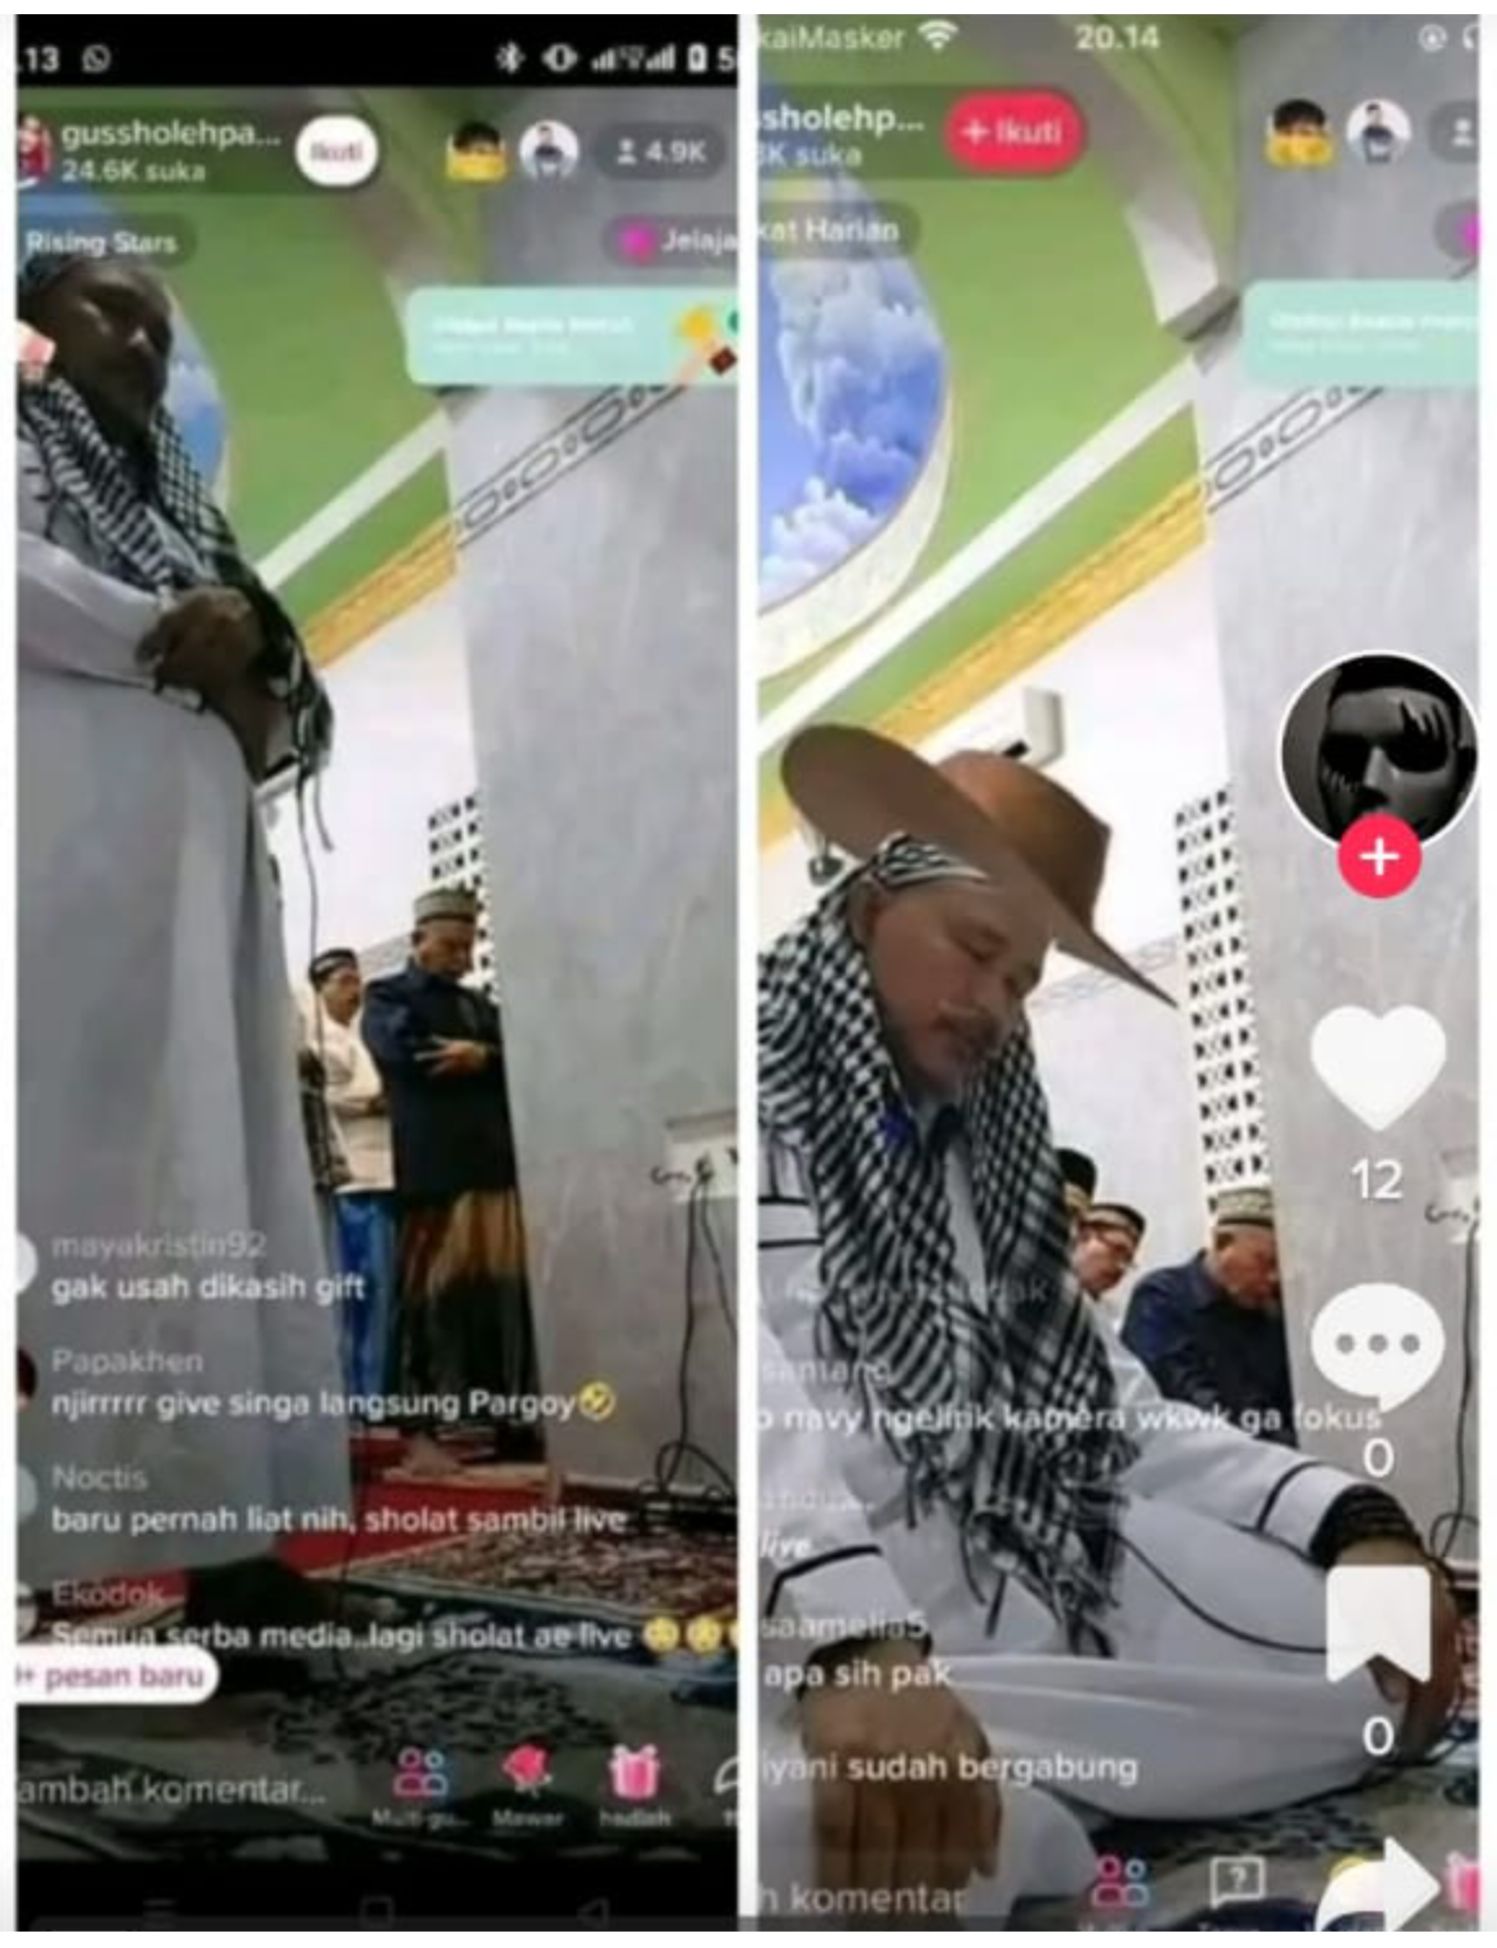 Gus Sholeh Pati yang viral karena jadi imam sholat tarawih sambil live TikTok.